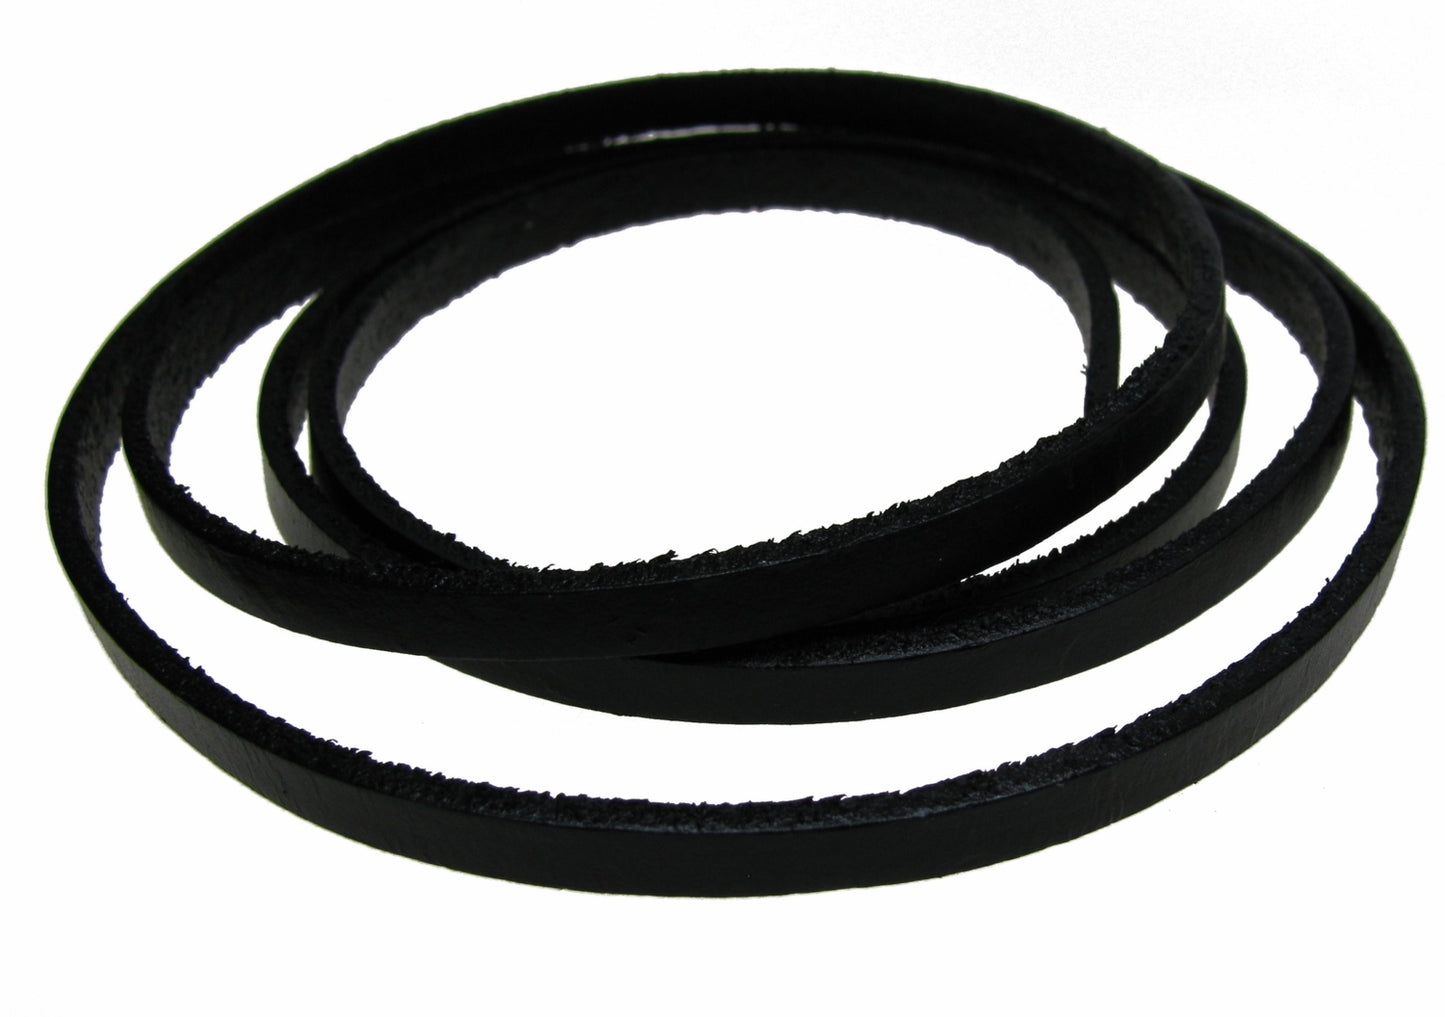 1m Lederband schwarz flach, breit 5 x 2mm, ideal für Armbänder, Schmuck machen